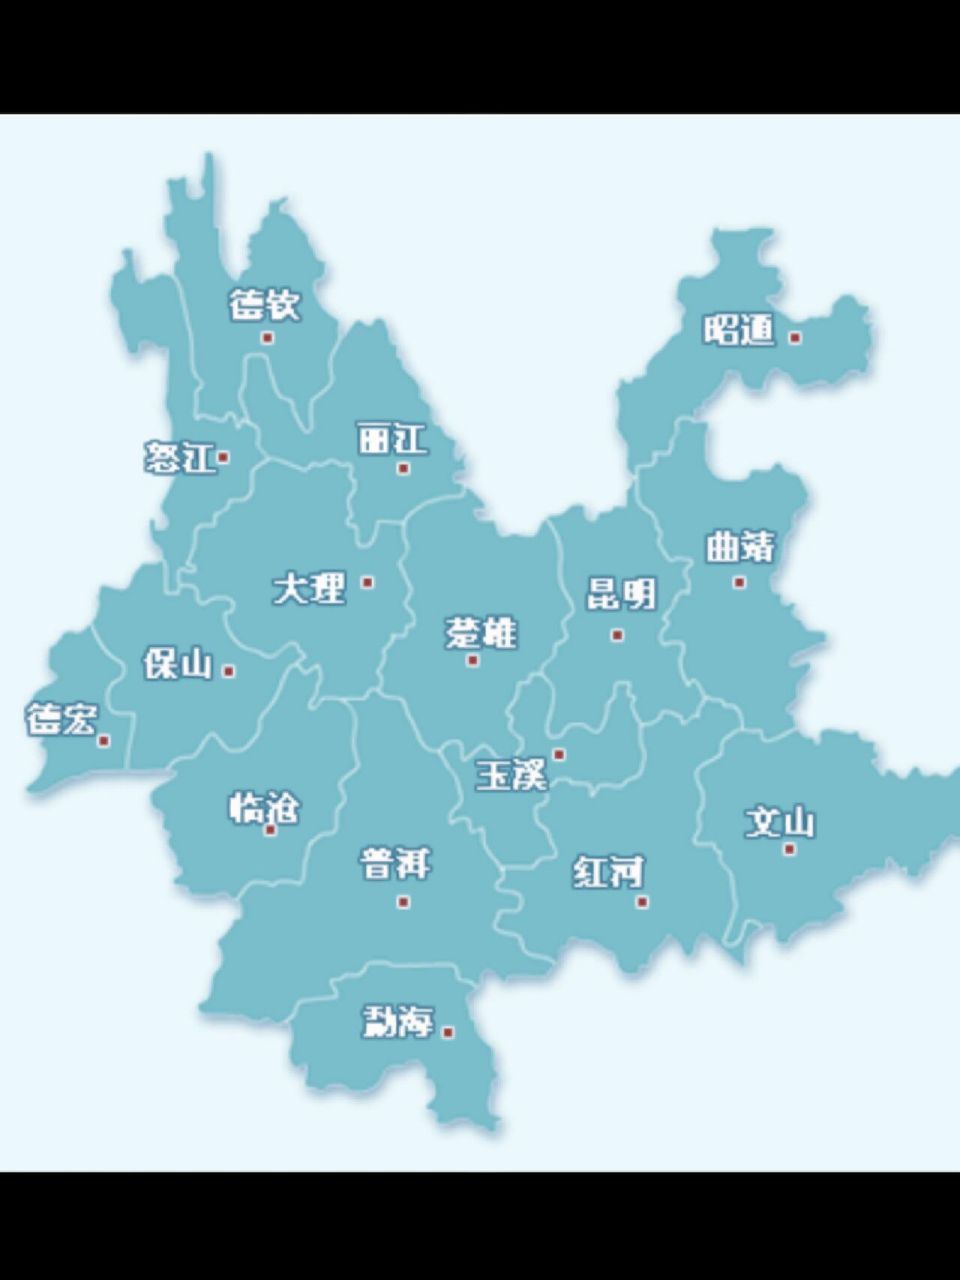 云南的城市区划分布一览